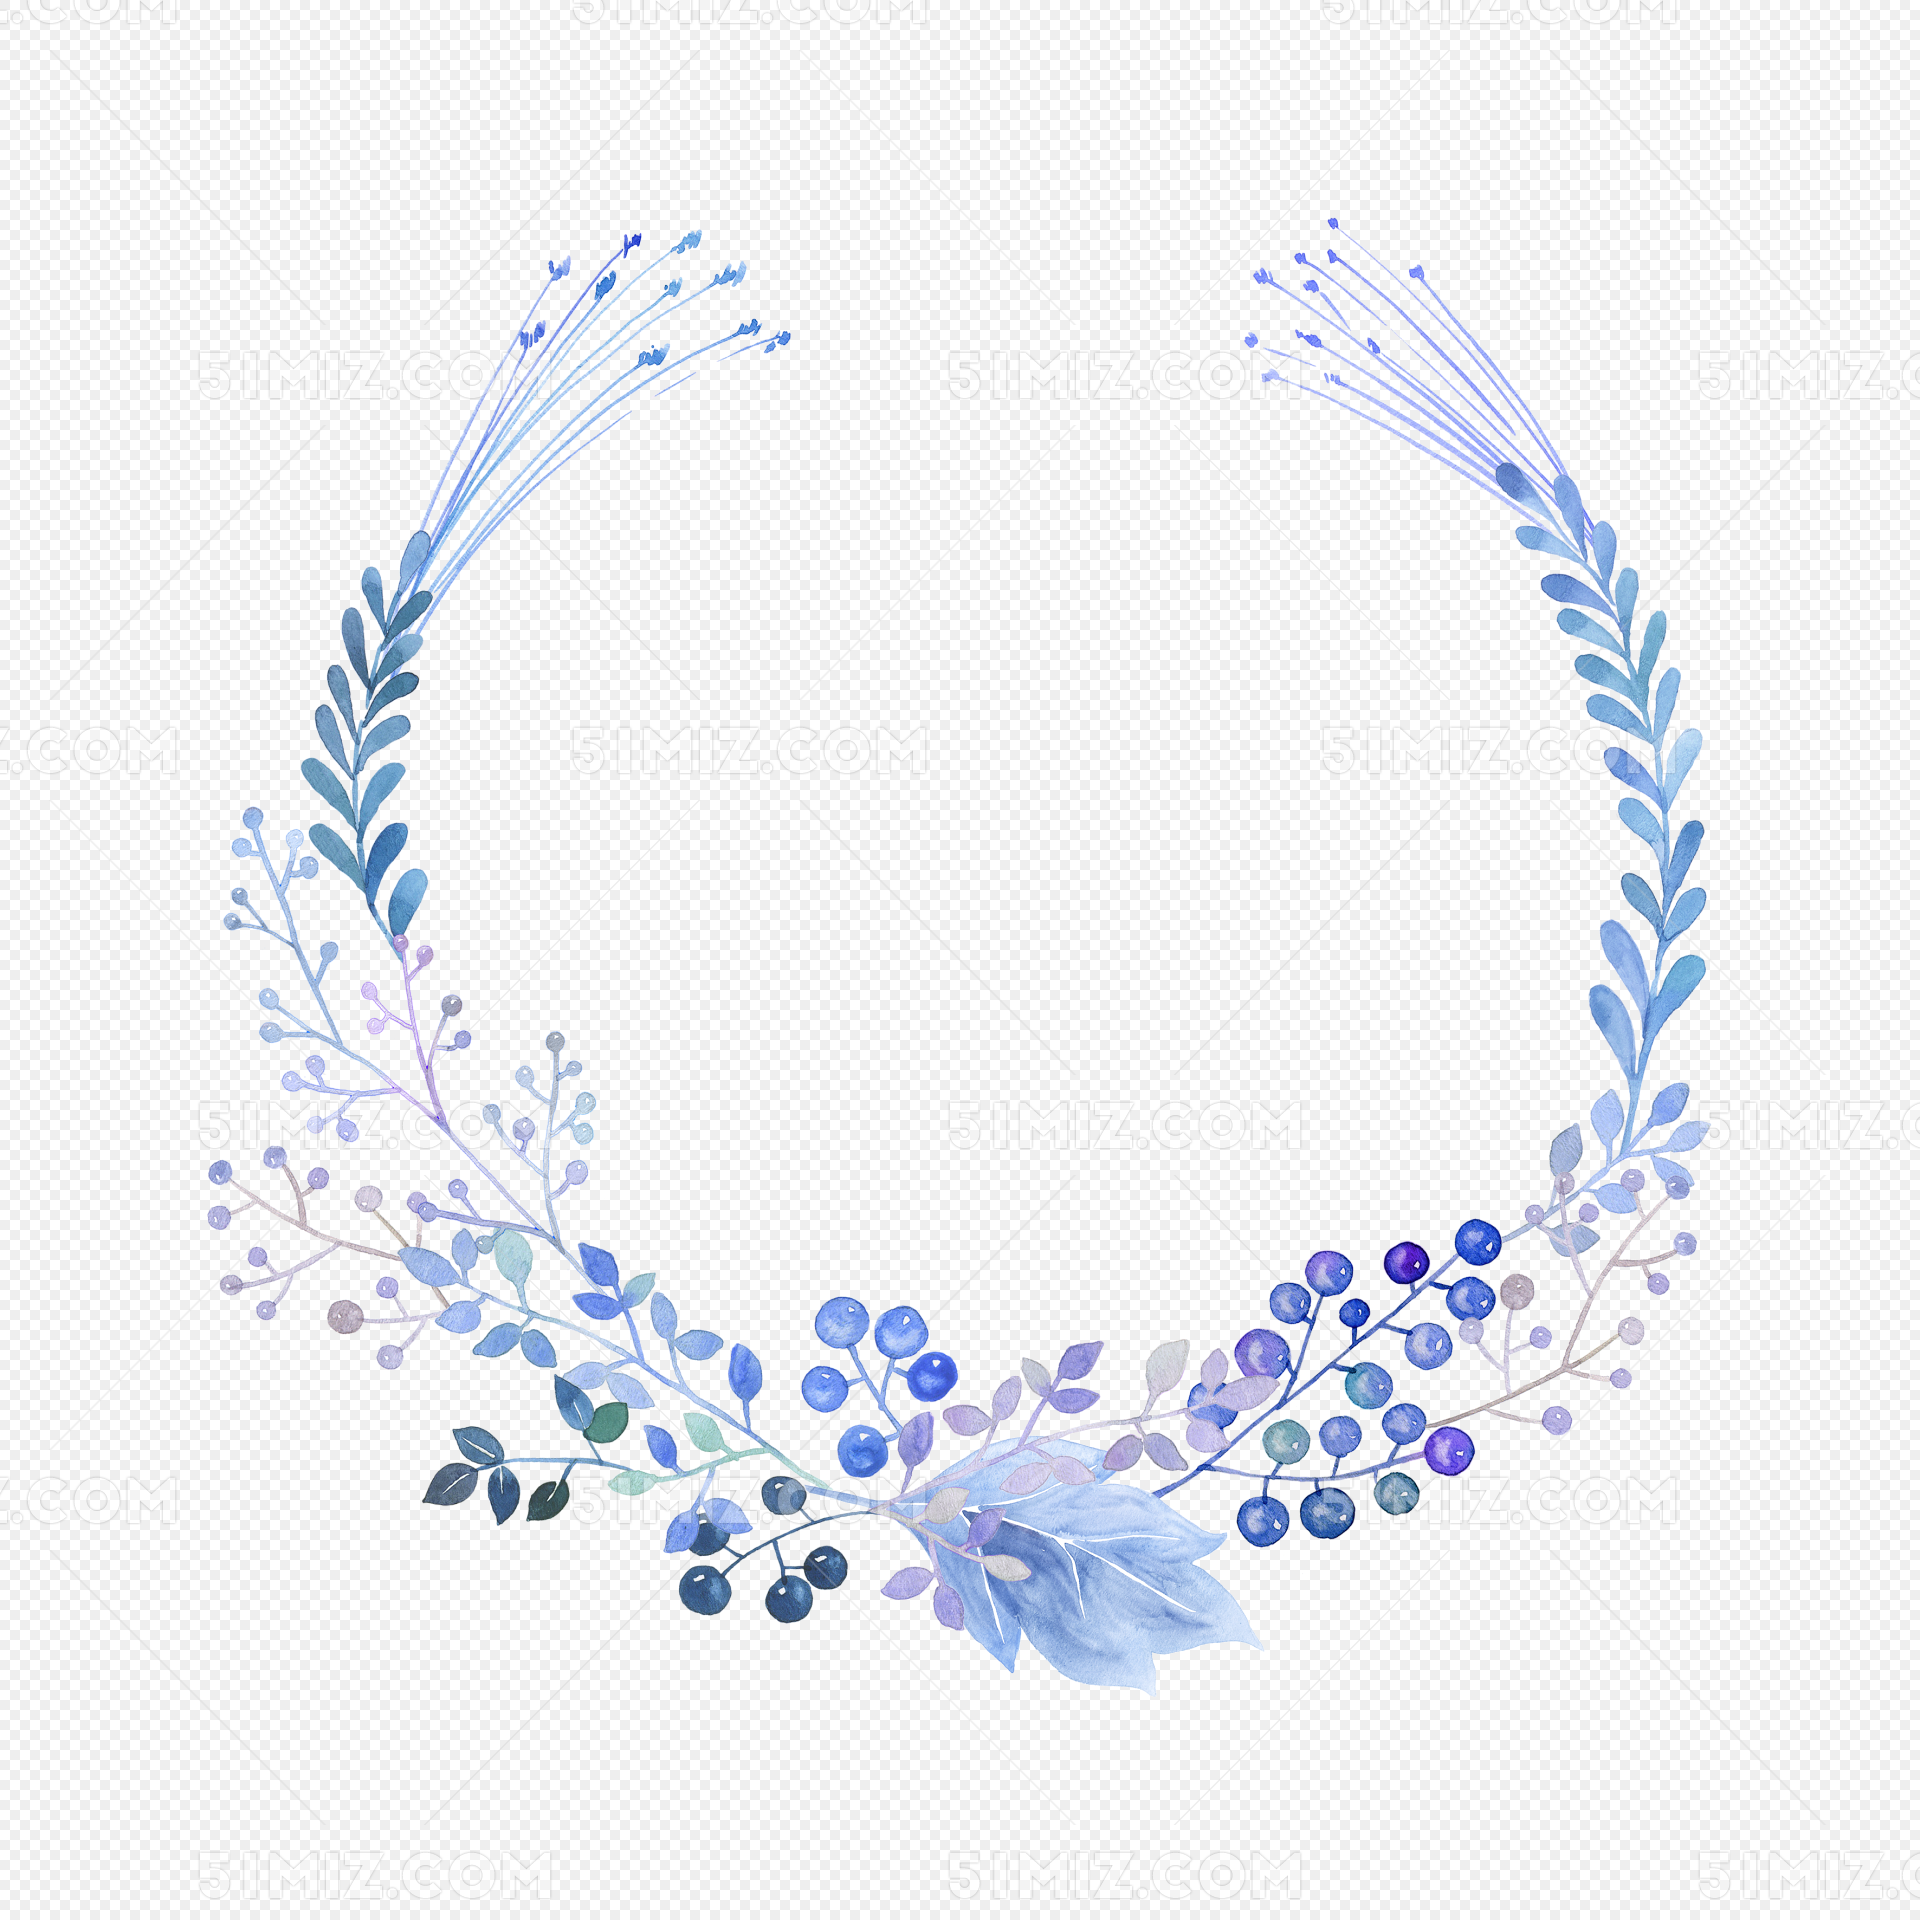 小清新蓝色花卉插画图片素材免费下载 - 觅知网